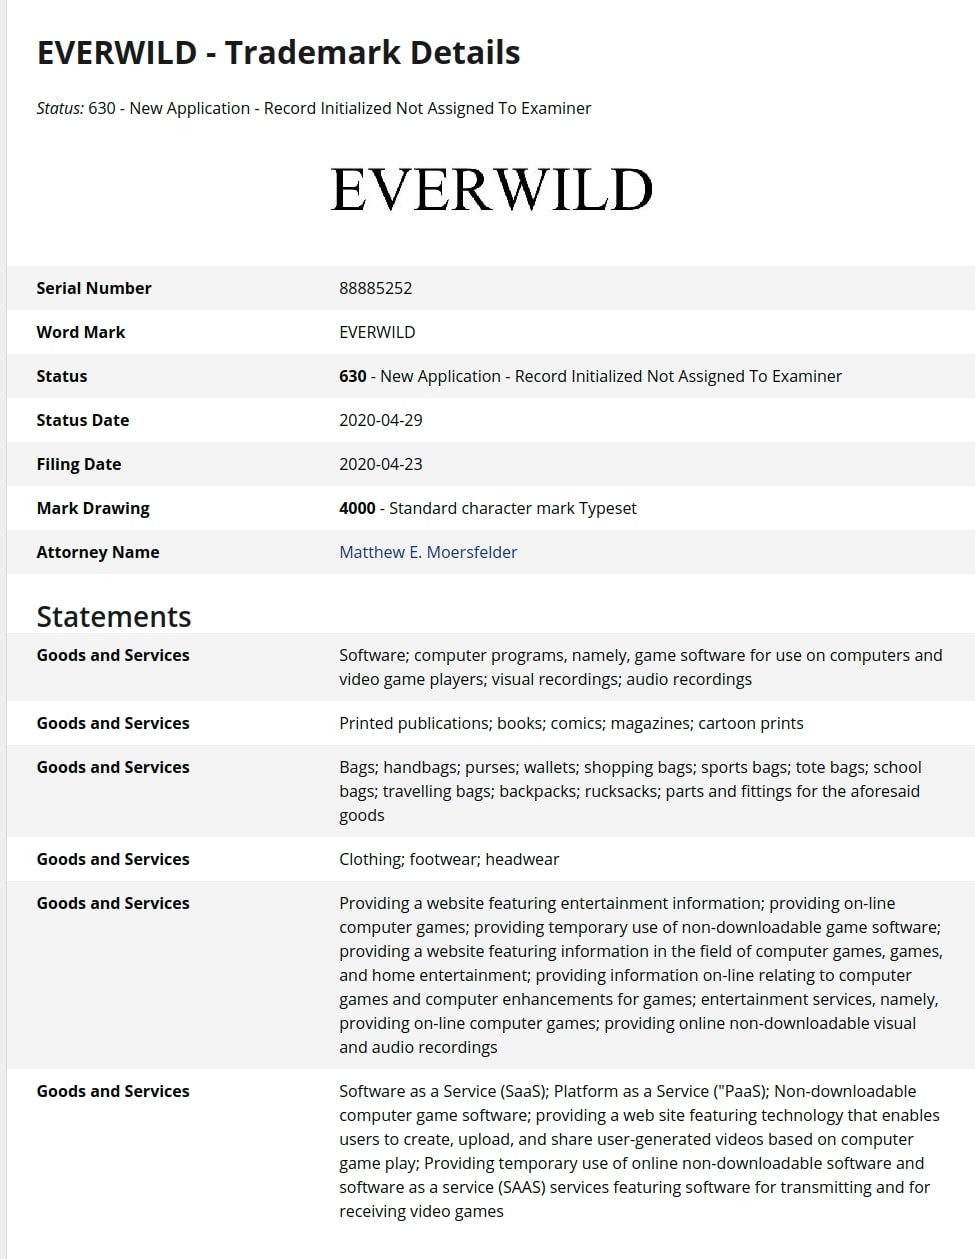 download everwild